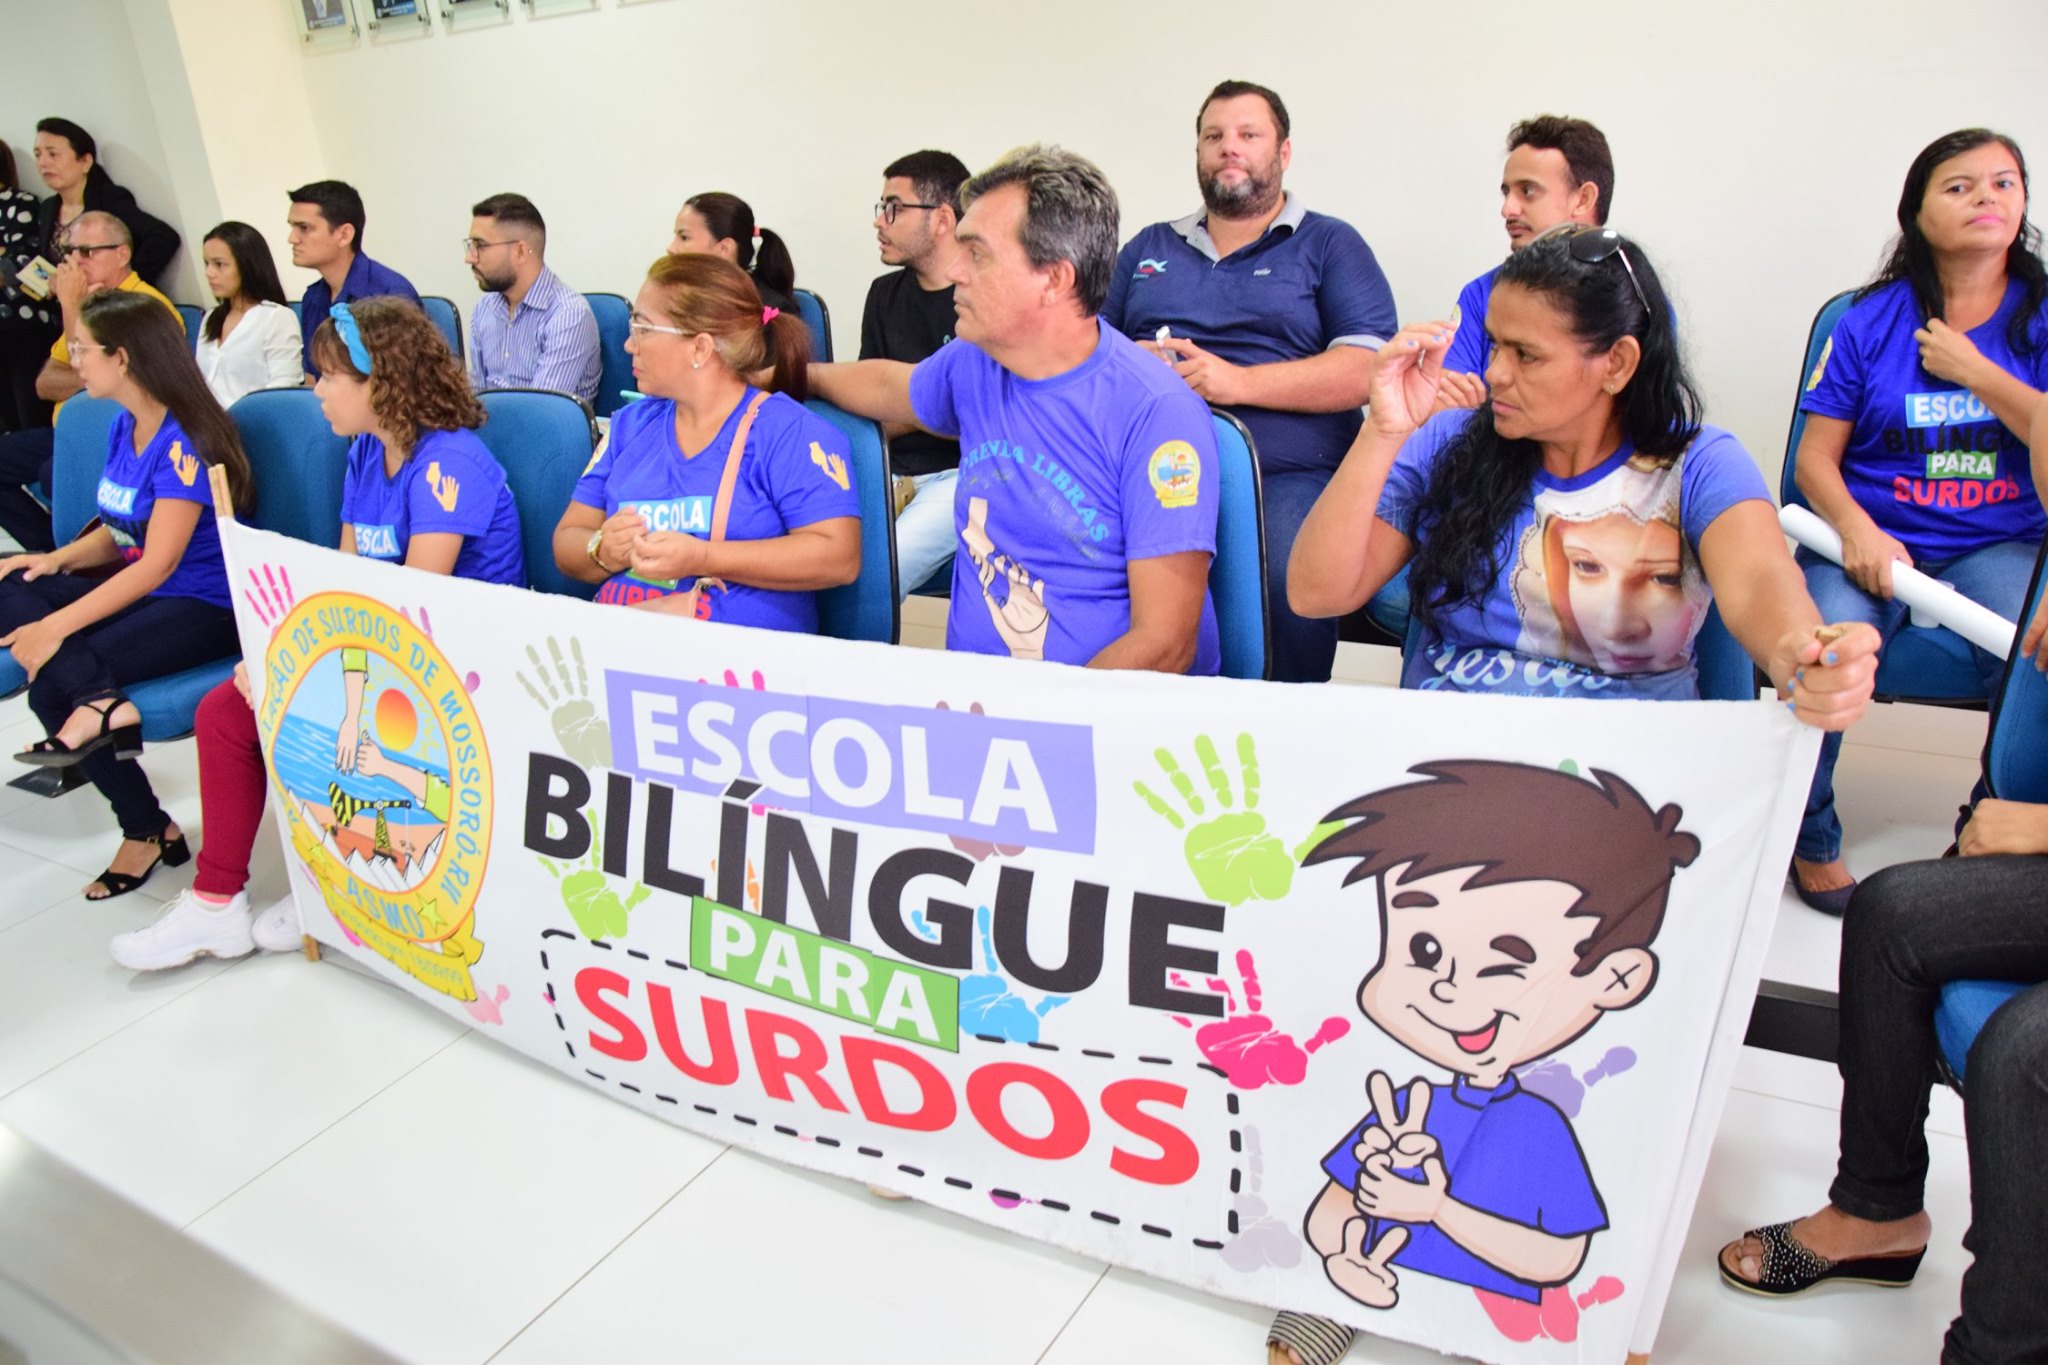 Escola bilíngue para surdos é destaque na Tribuna Popular